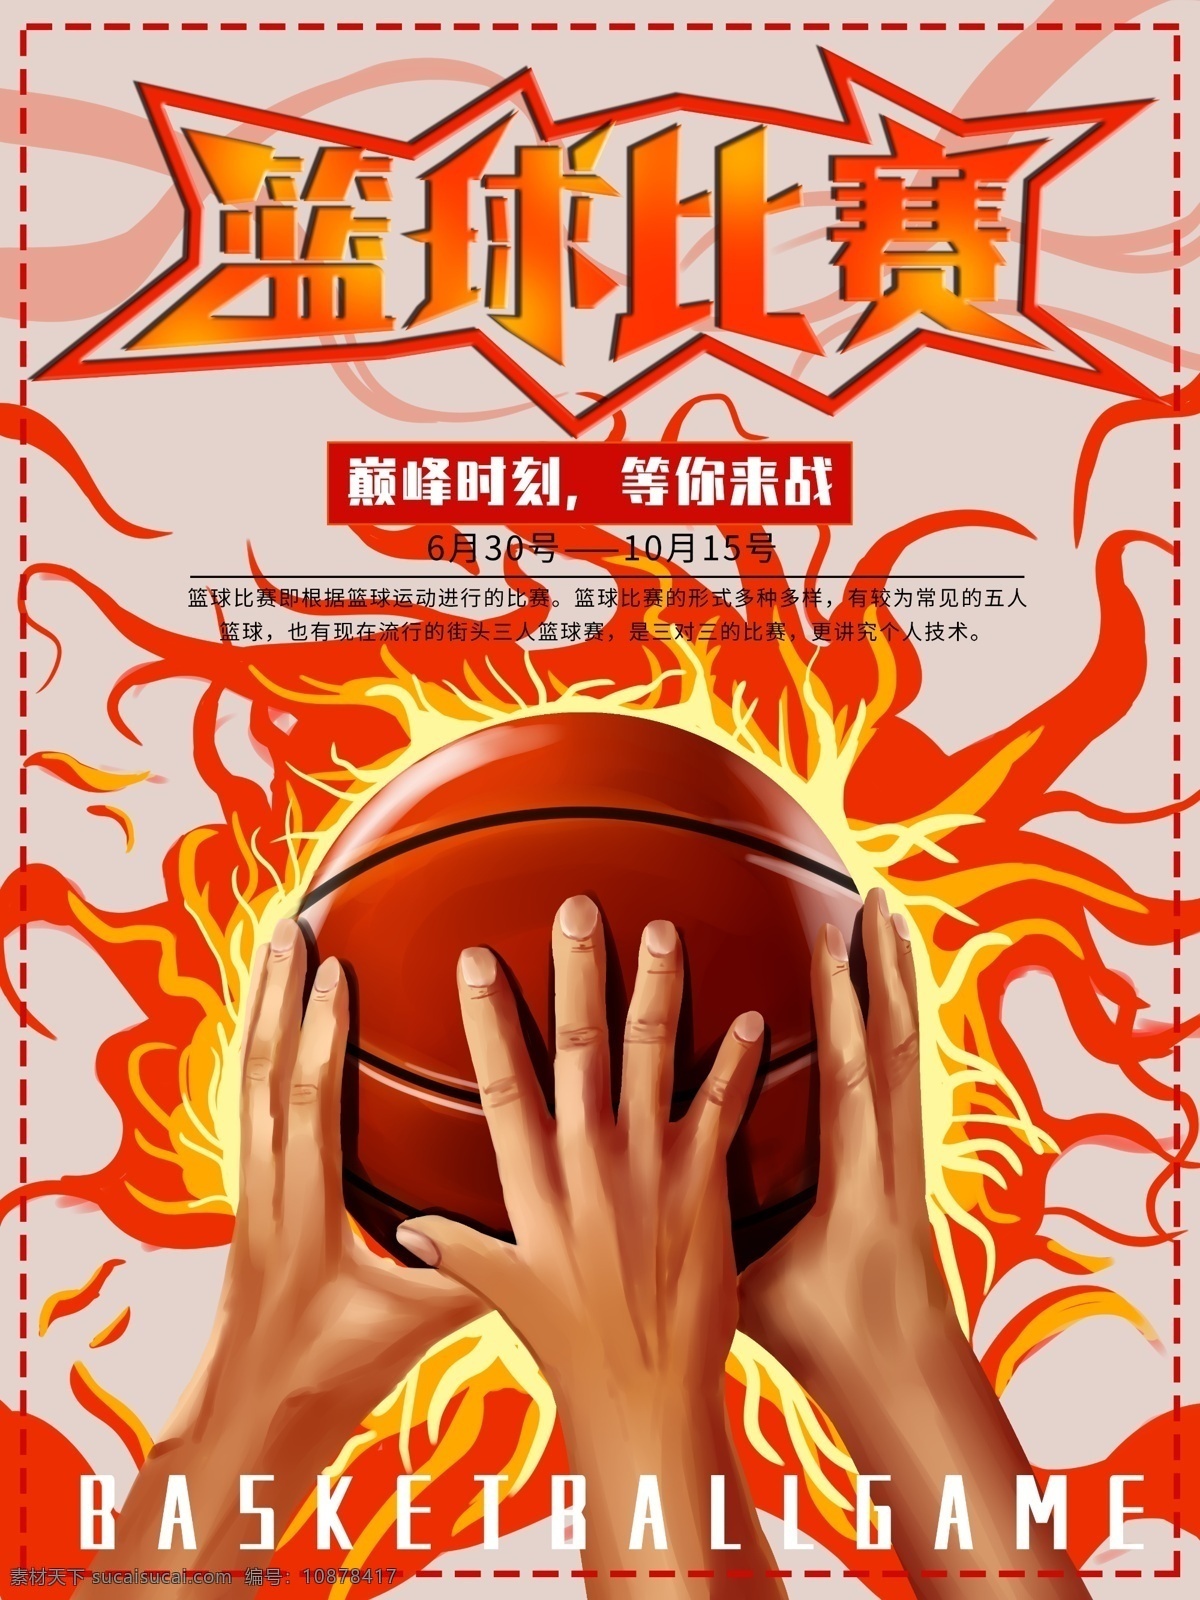 原创 手绘 篮球 比赛 体育 海报 篮球比赛 体育海报